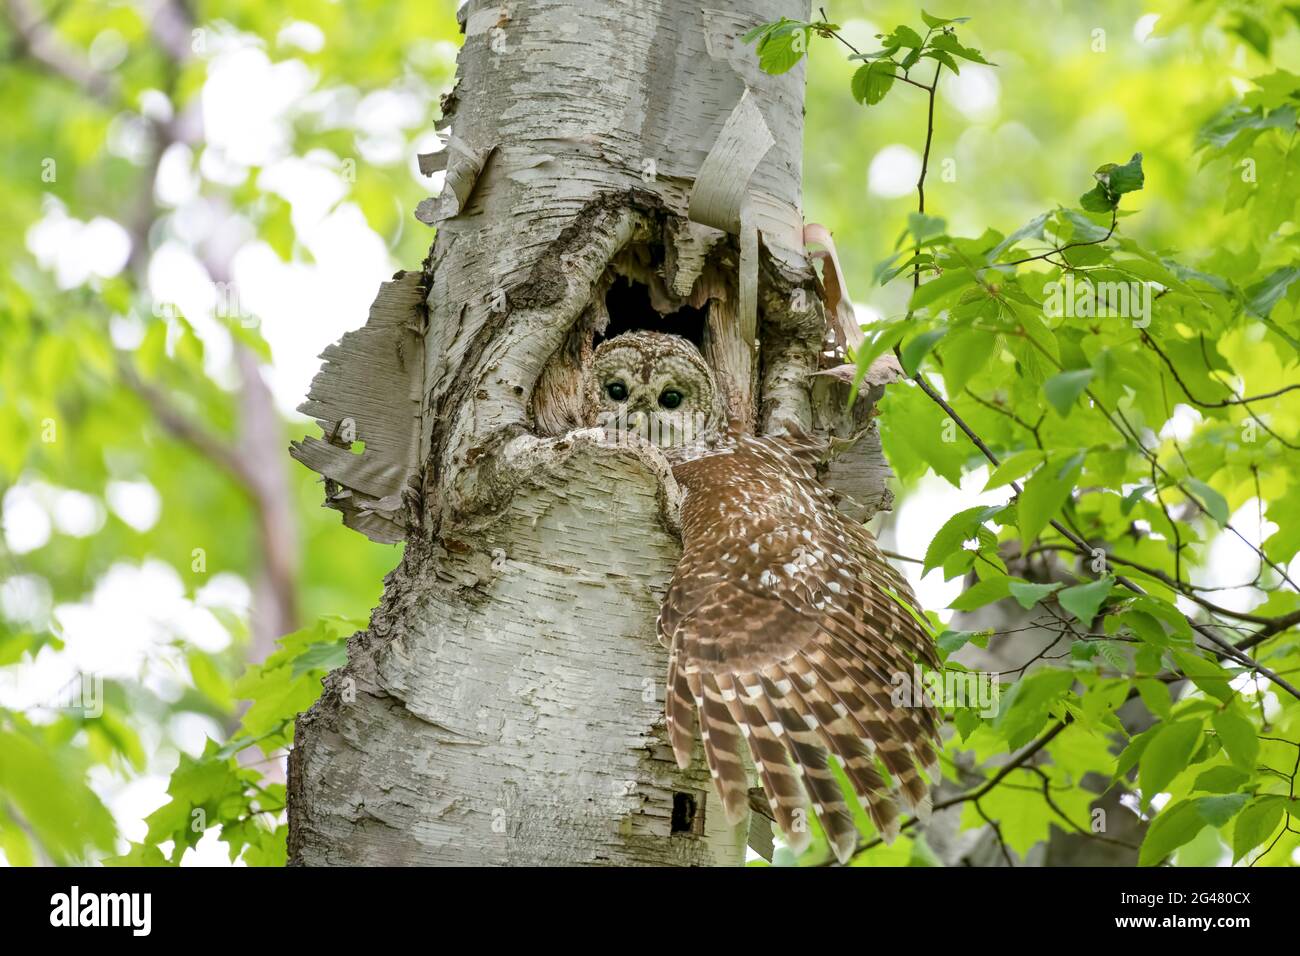 Hibou barré dans son nid à l'intérieur d'un arbre, regardant dehors avec une grande aile étirée hors du nid. Ses deux chouettes sont sous elle dans la cavité de l'arbre. Banque D'Images